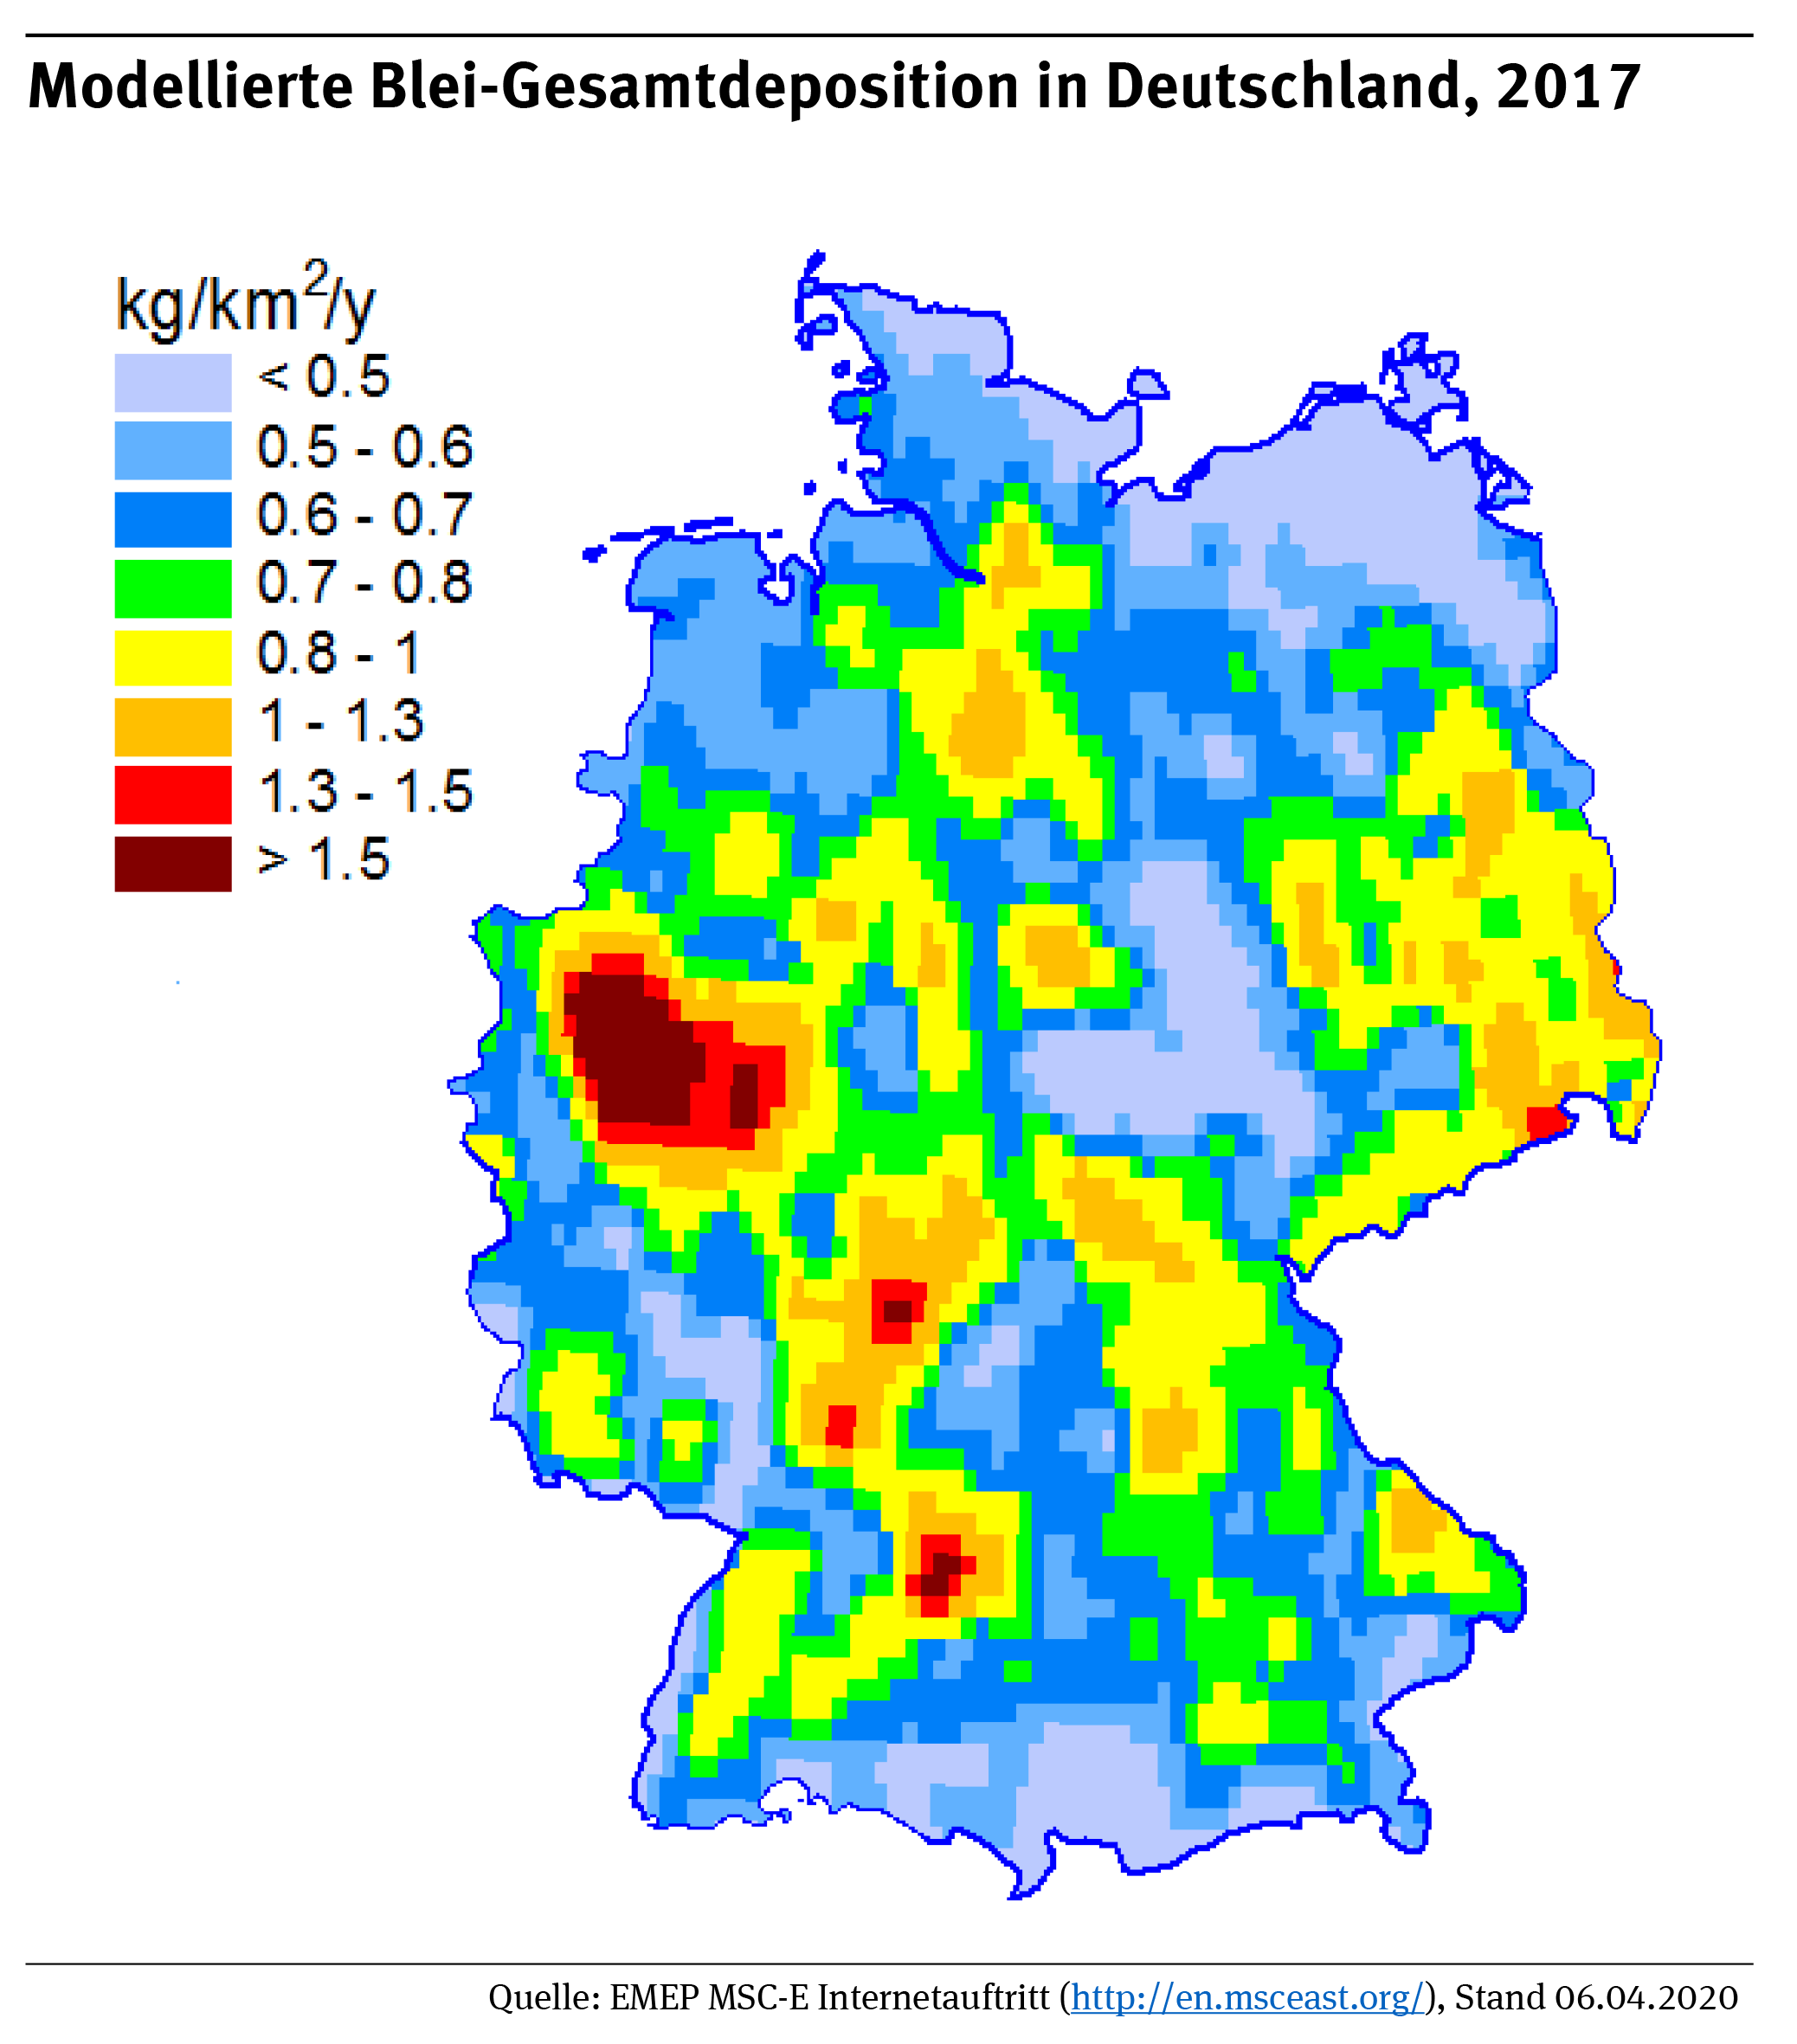 Die Karte zeigt: die Blei-Gesamtdepositionen in Deutschland lagen in 2017 größtenteils im Bereich von 0,6 – 1,5 kg Pb/km².